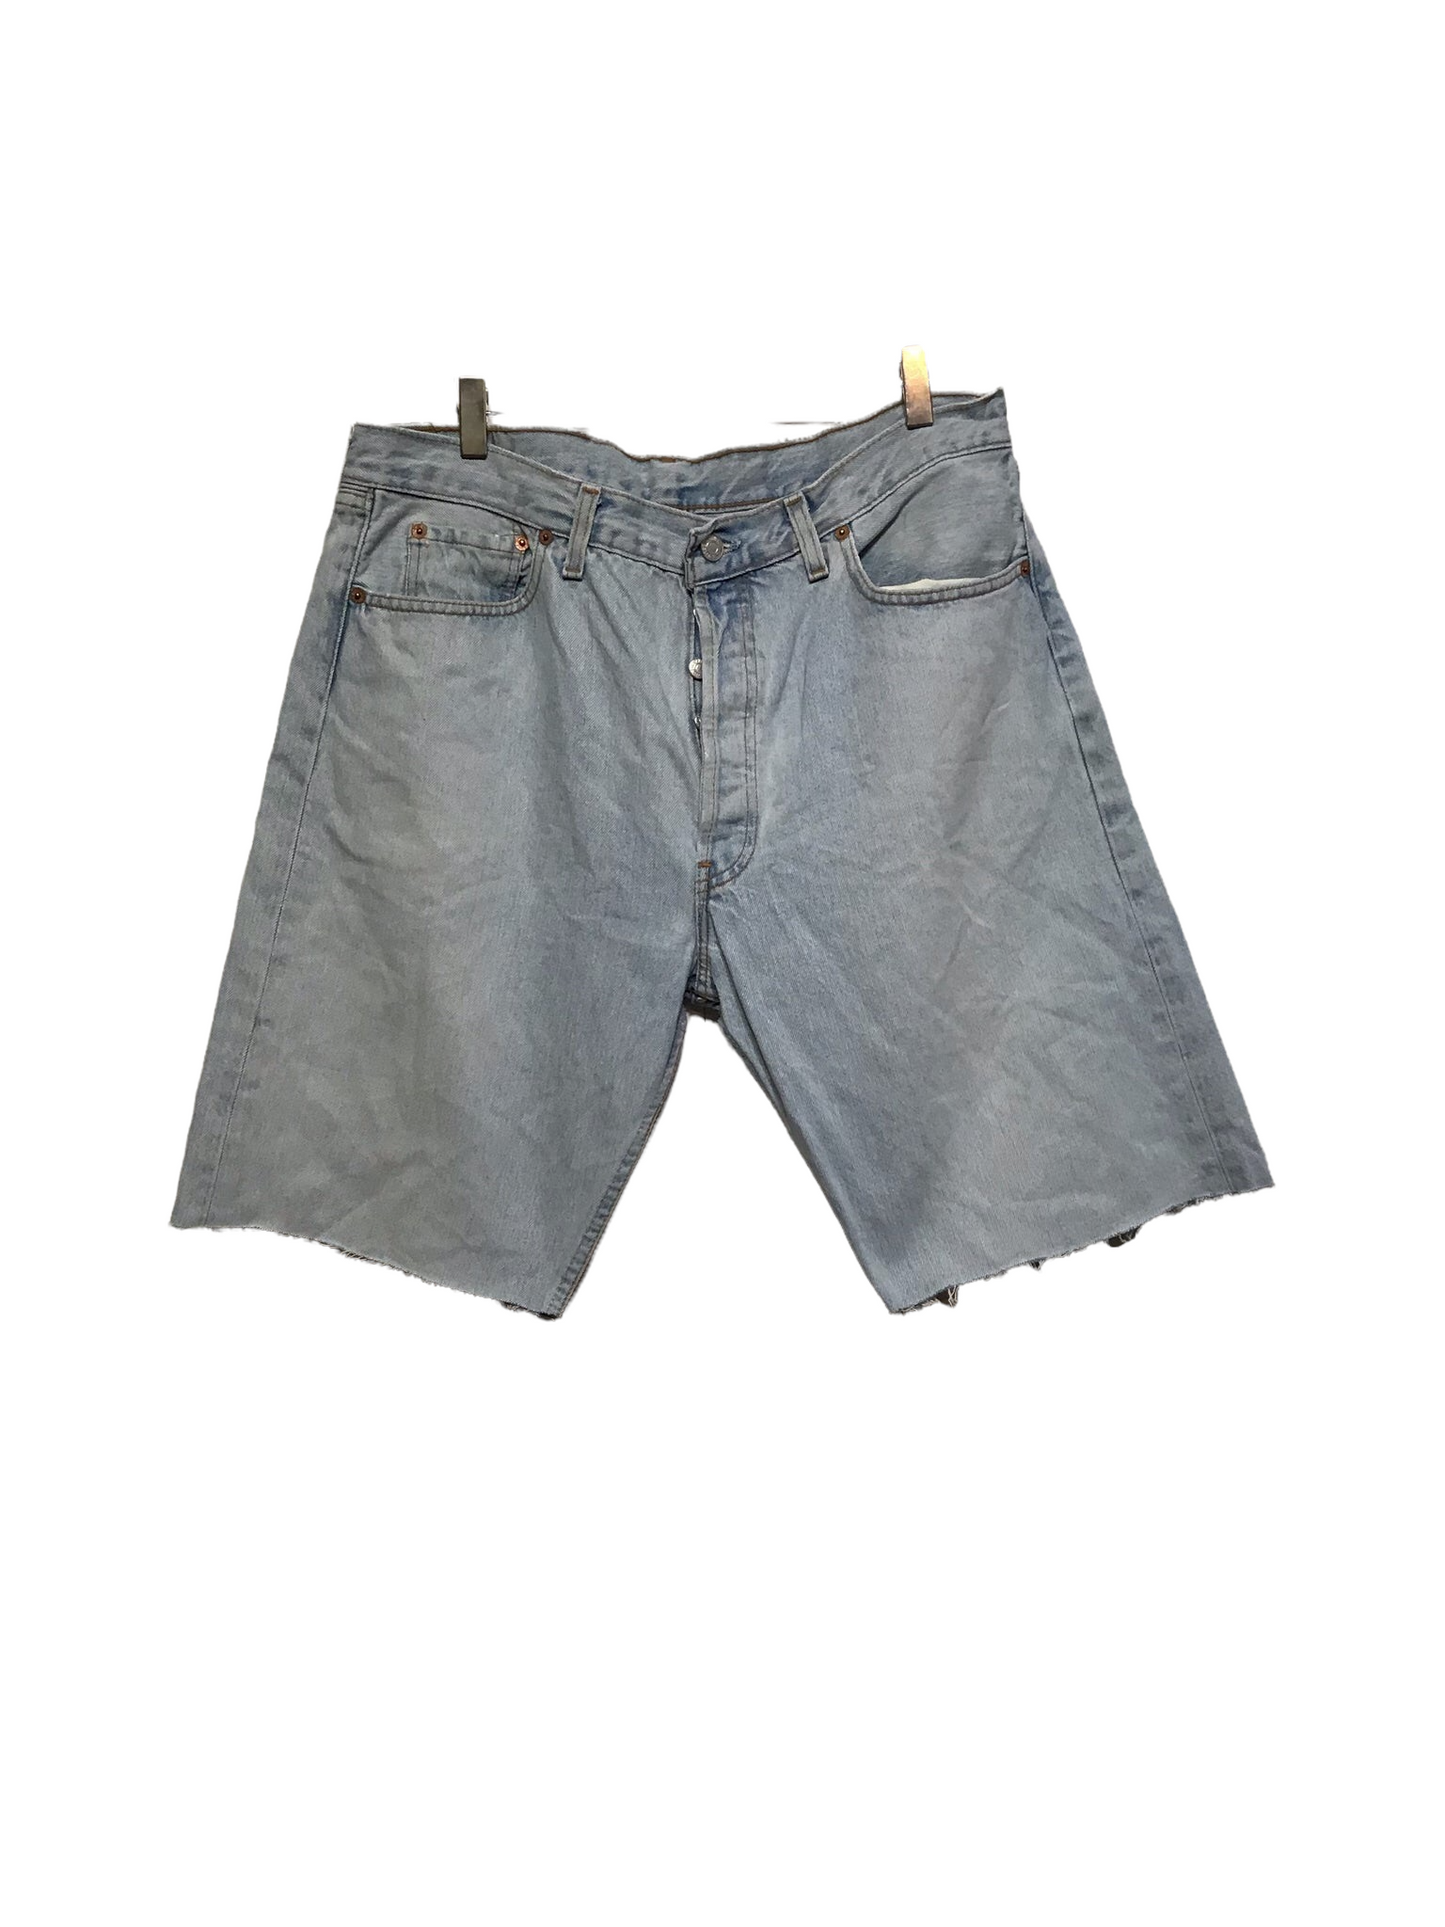 Levi’s Denim Shorts (Size L)